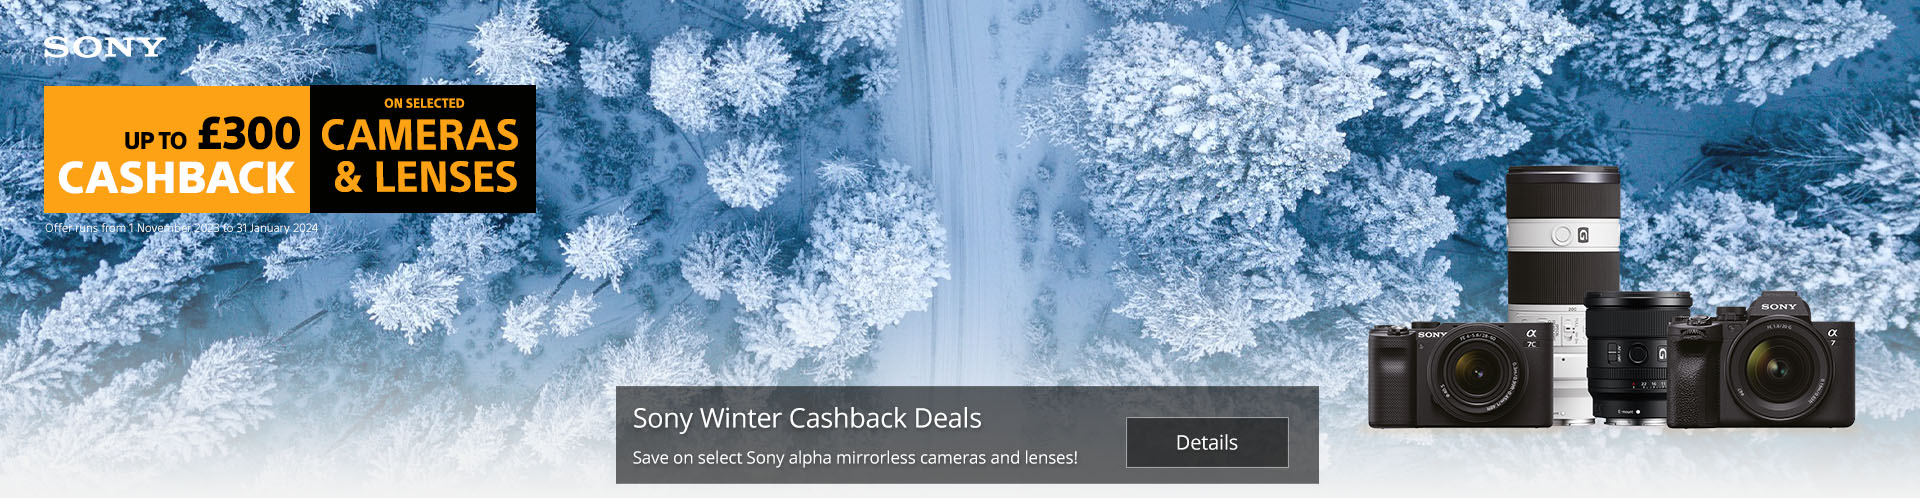 Sony Winter Cashback Promotion